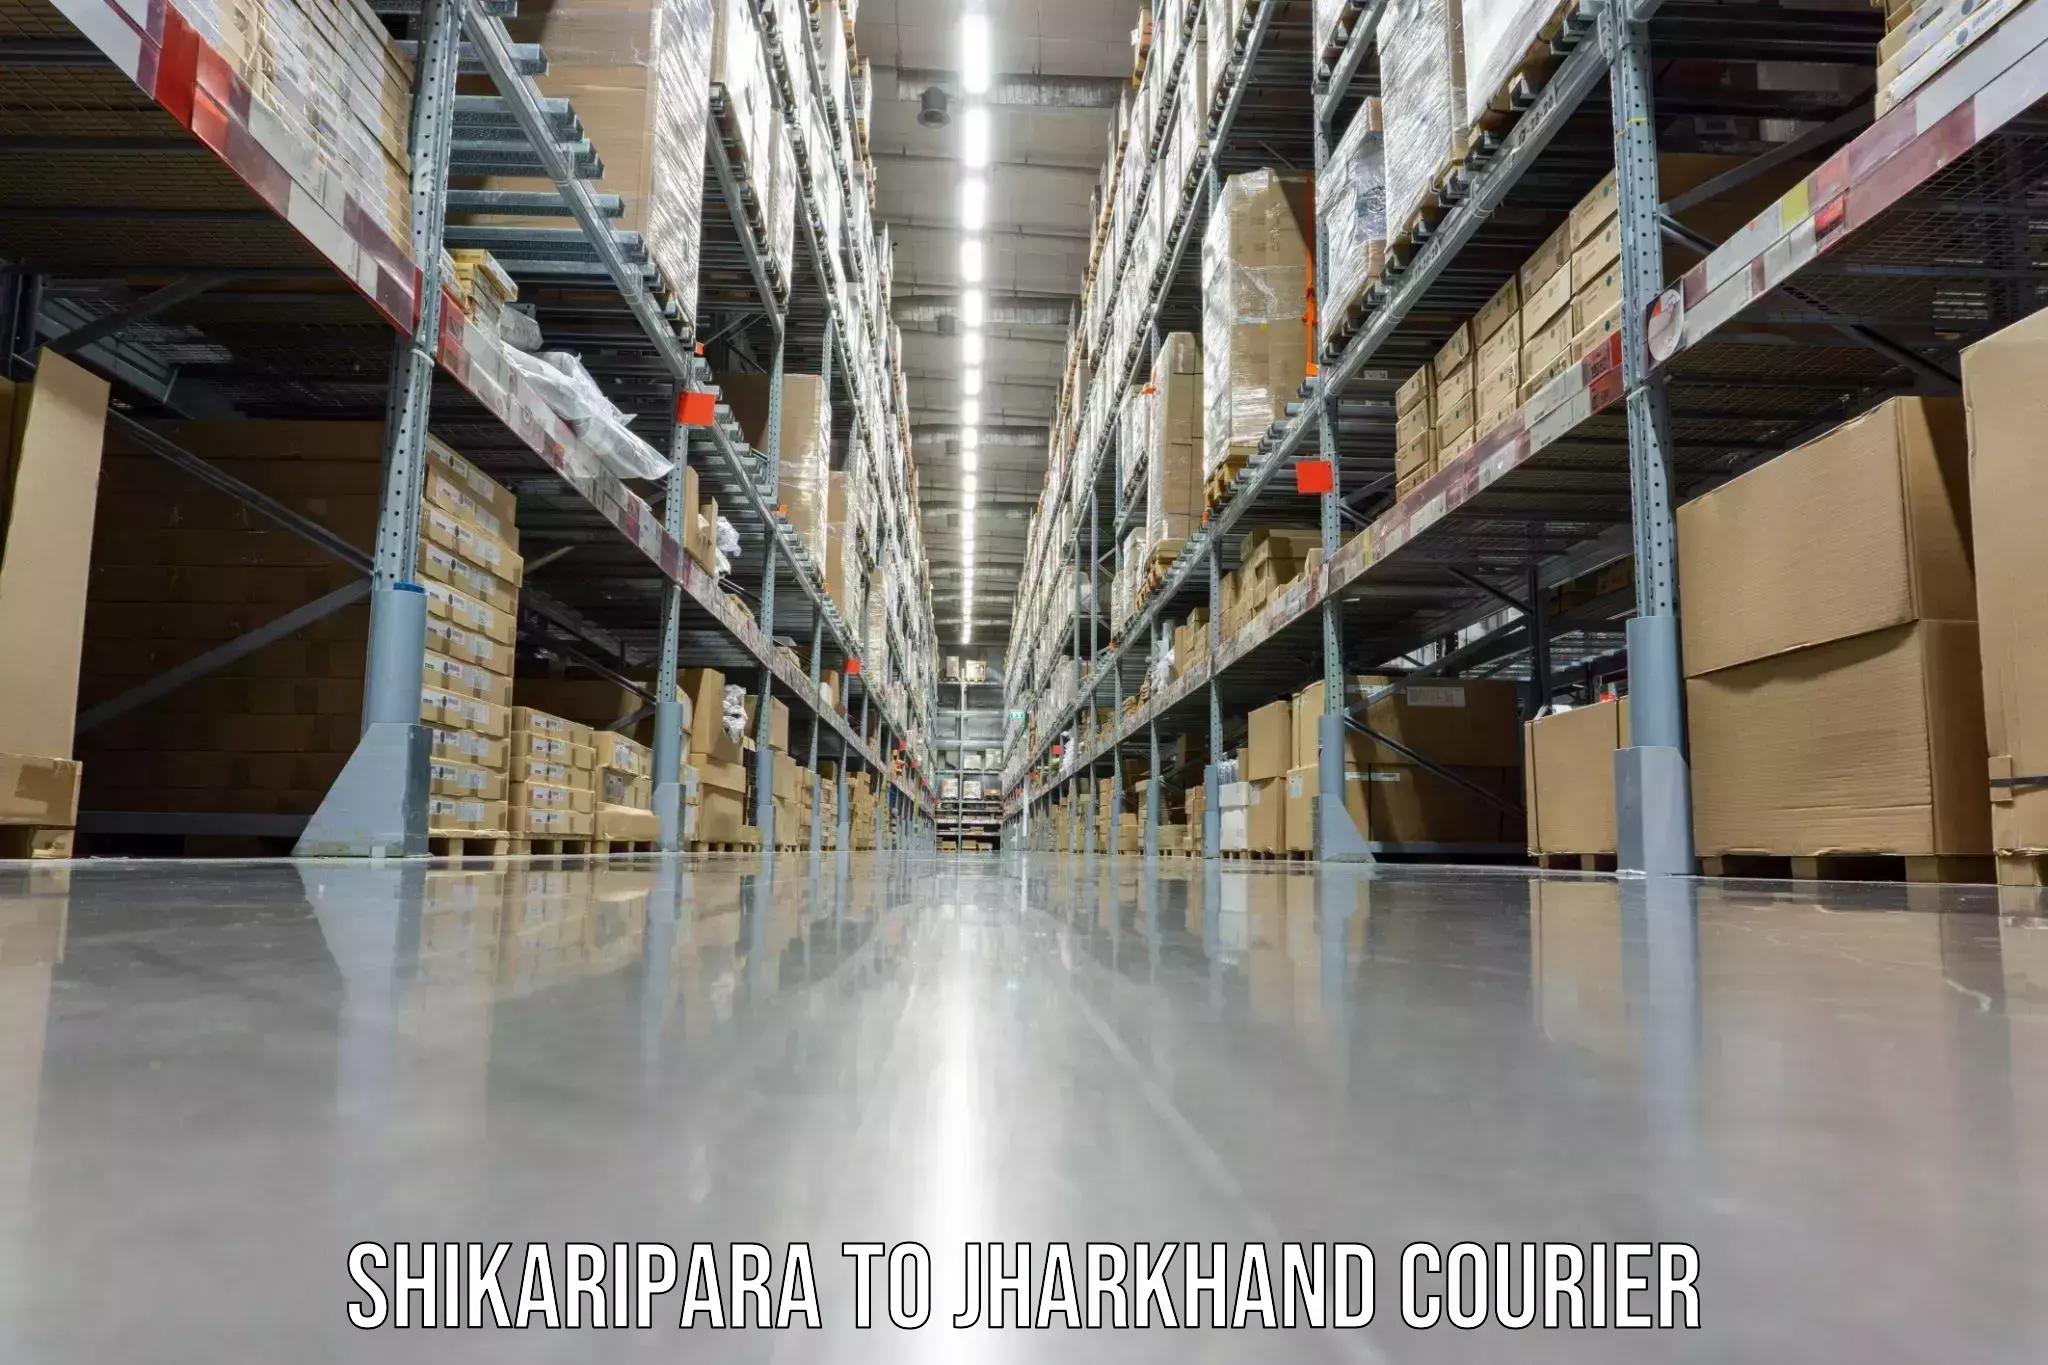 Furniture transport experts Shikaripara to Bundu